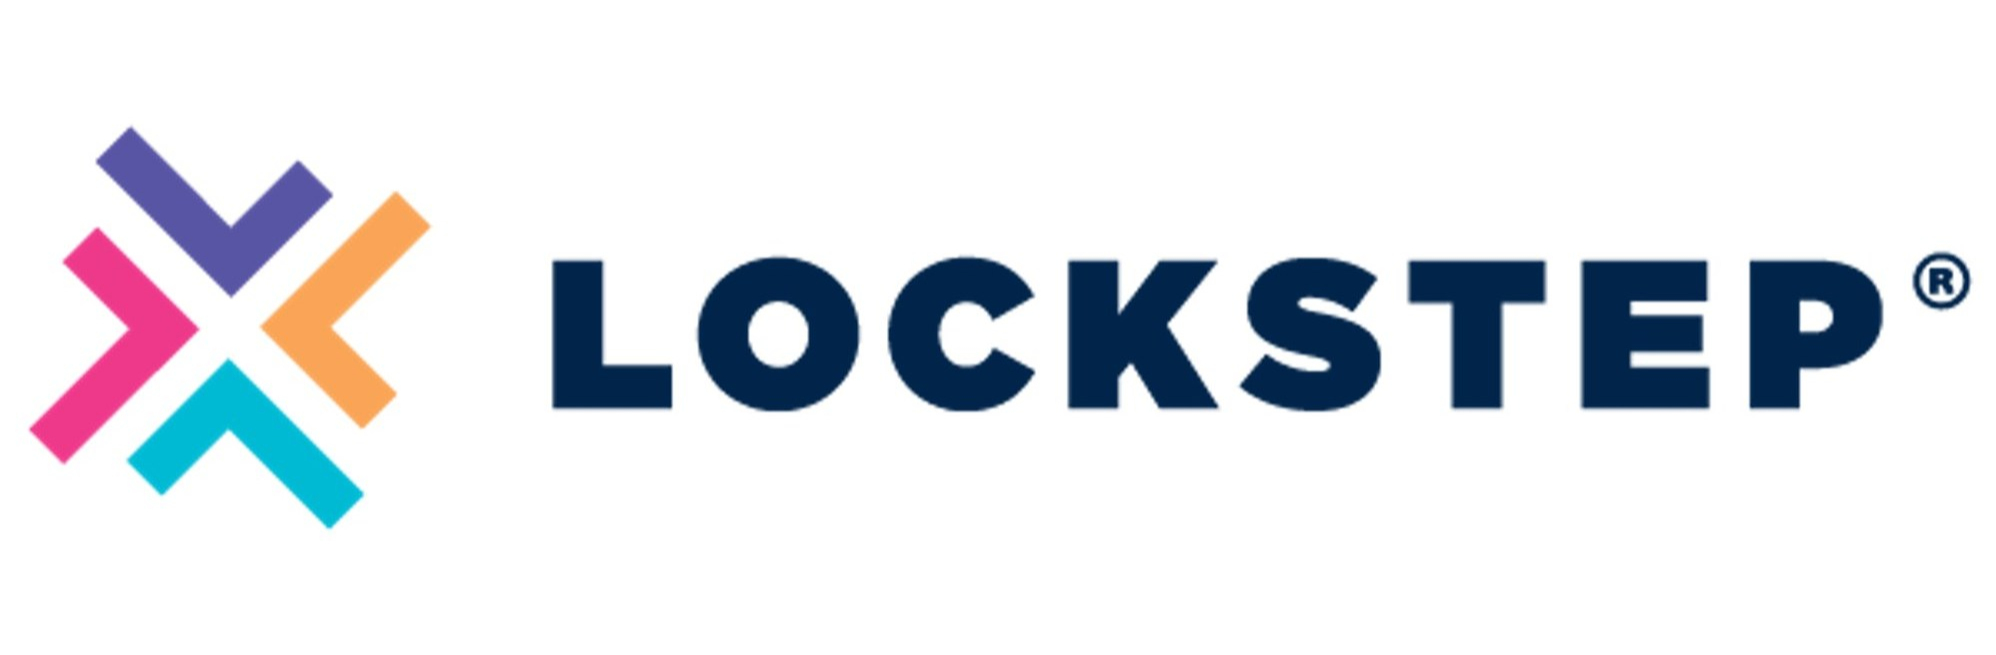 Lockstep logo